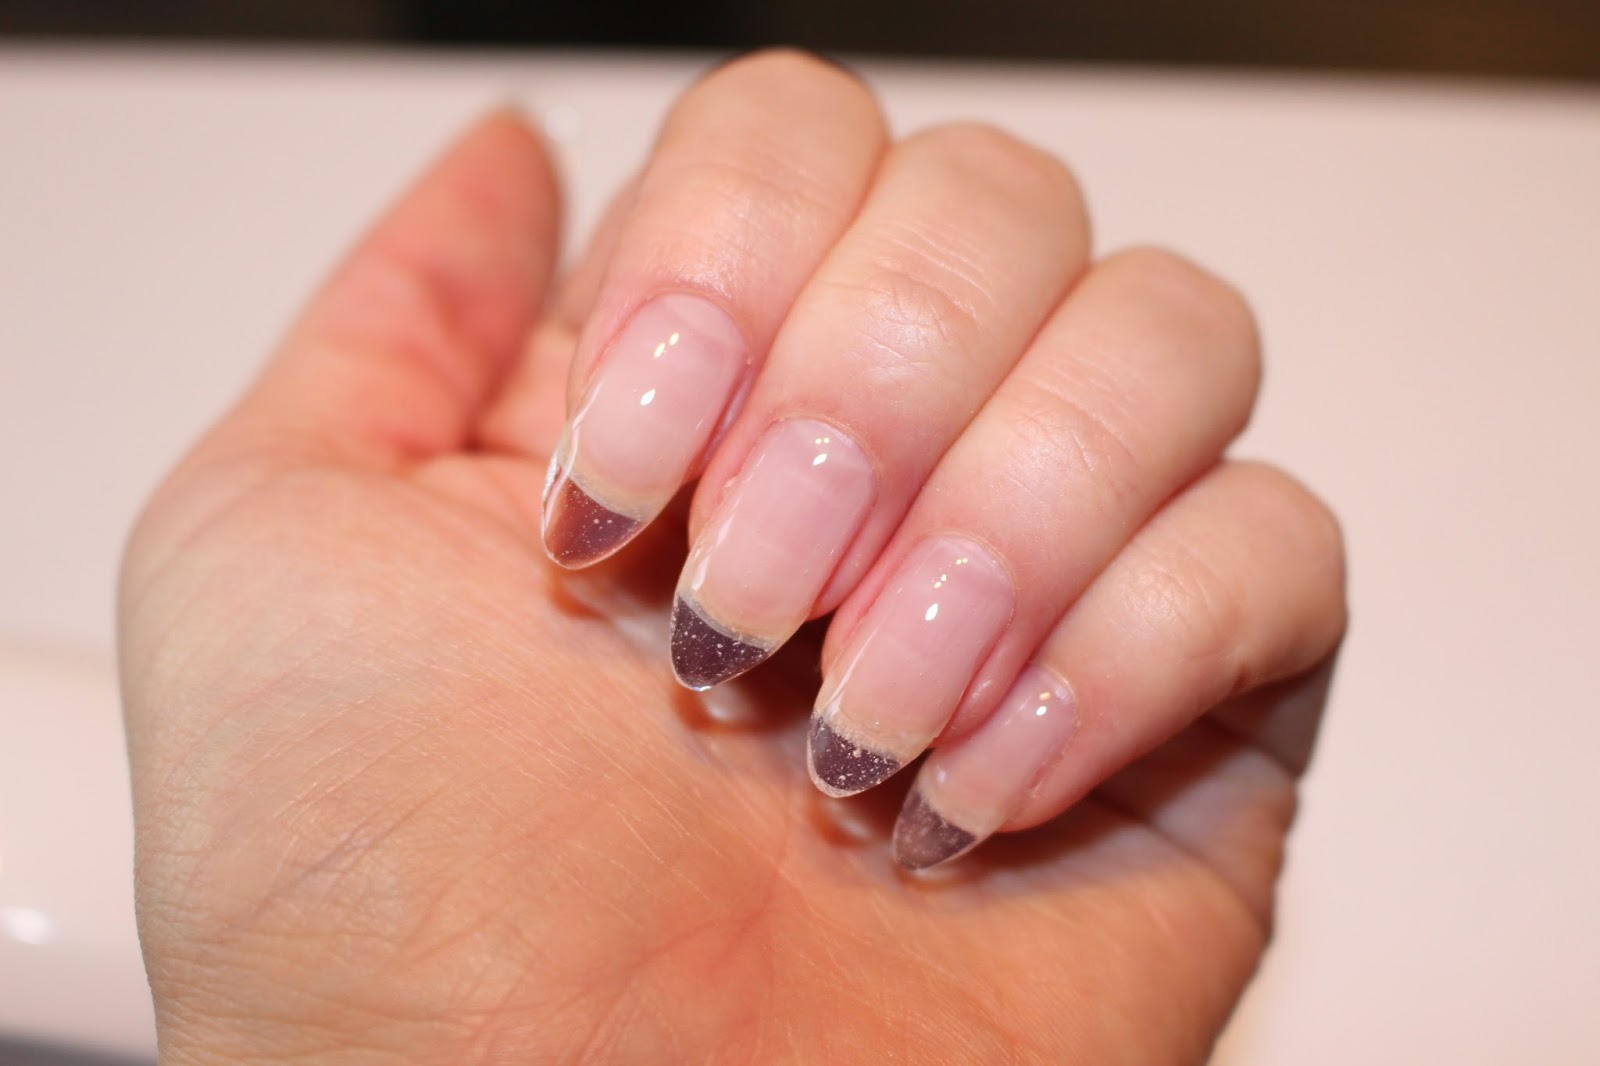 Semilac Hard żelowe paznokcie fake nails polish lakier UV gdzie kupić jak zrobić diamond cosmetics Poznań poland long plastic instagram hola paola